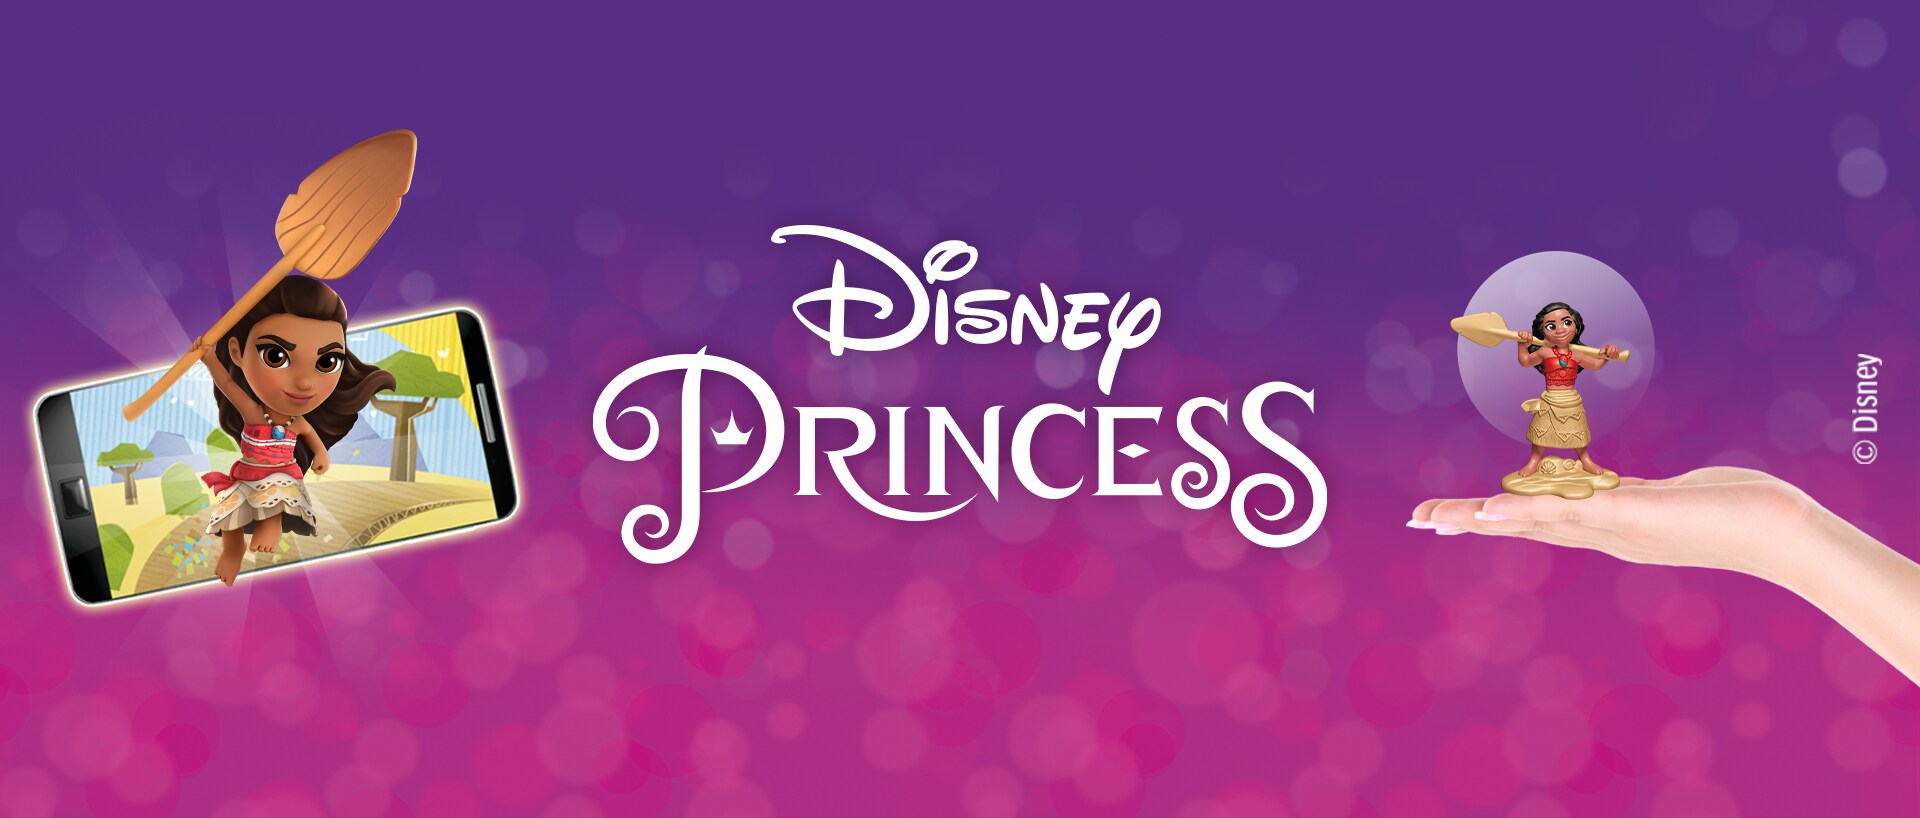 Princesas Disney. P de Princesa. Descubre las letras de la A a la